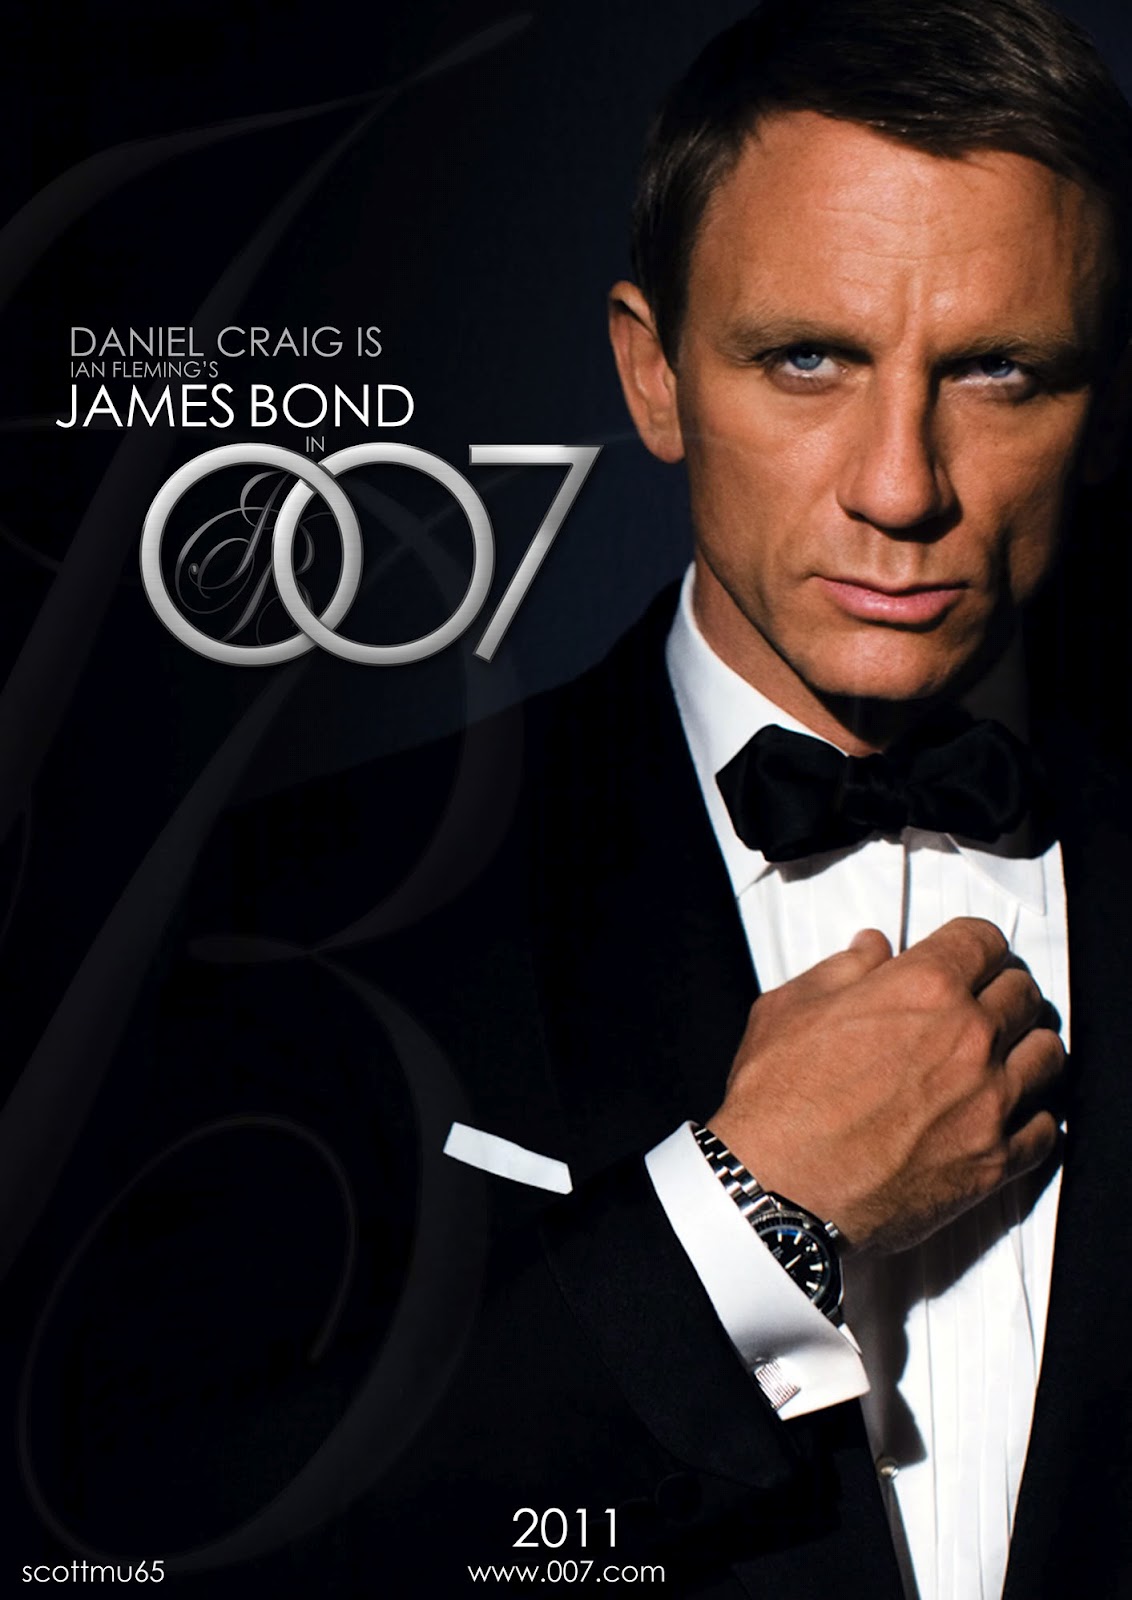 Daniel Craig James Bond Movies List